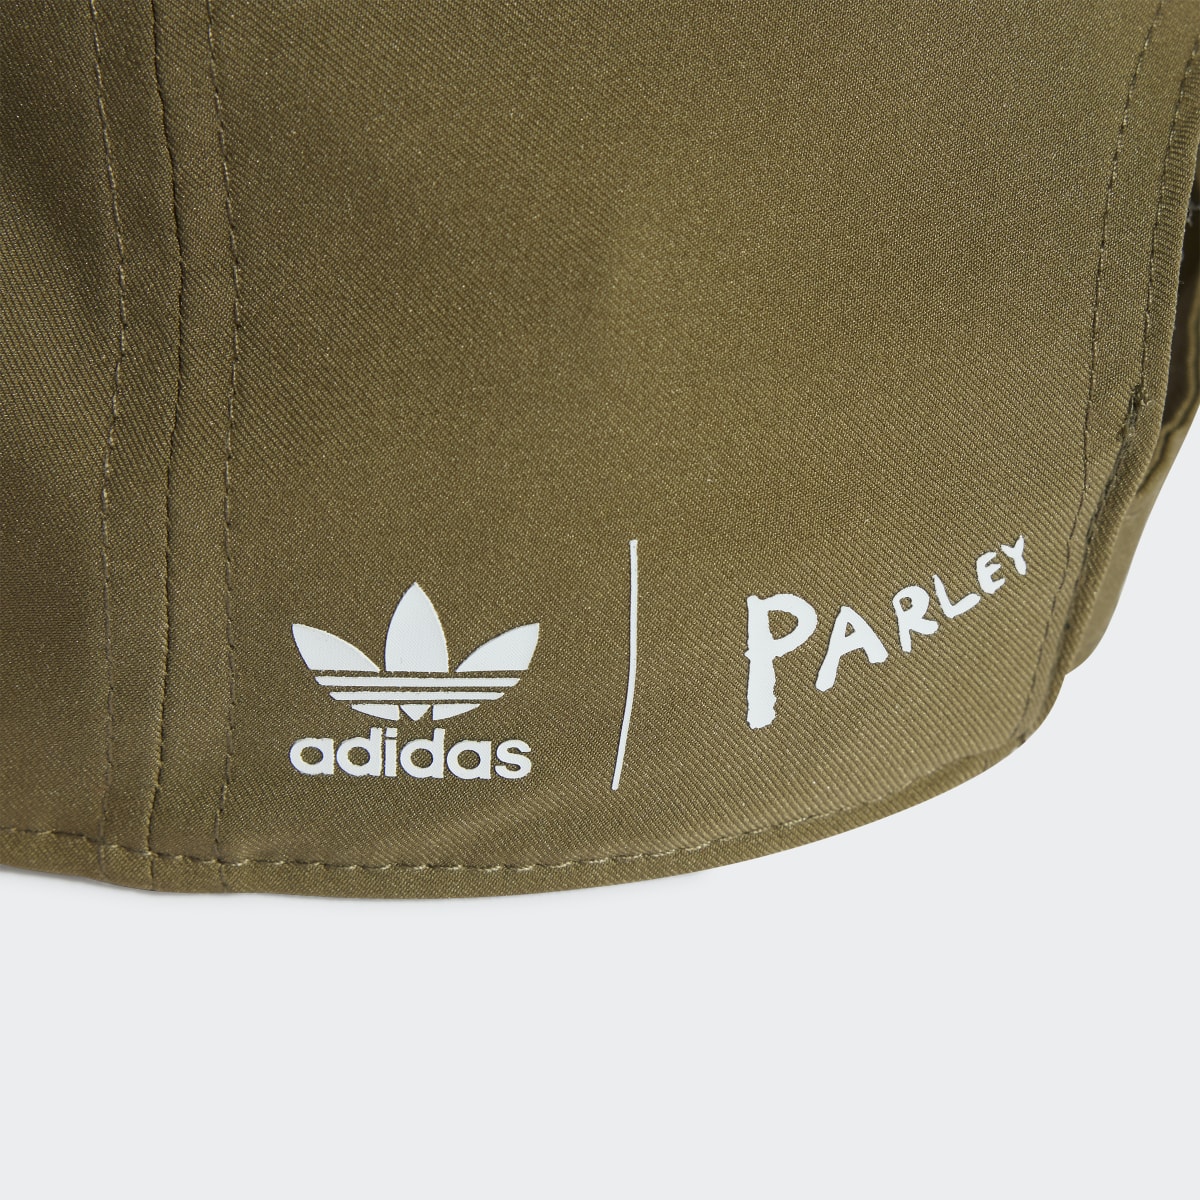 Adidas Parley Baseball Cap. 5